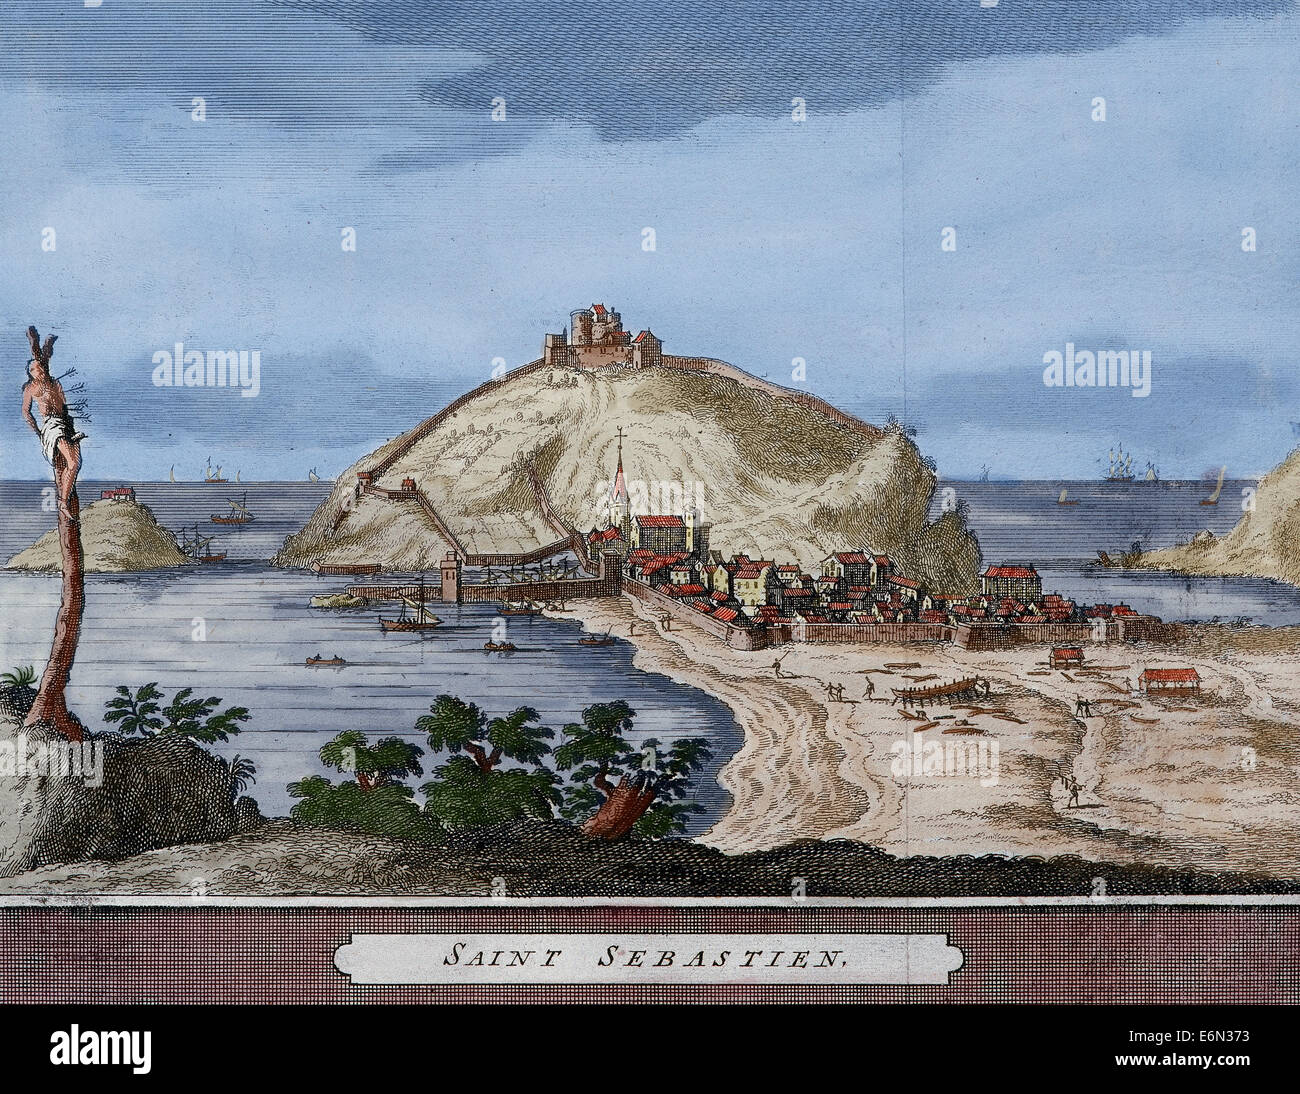 Spagna. San Sebastian o Donostia. Santa Clara isola. Mappa. Fine del XVI secolo - XVII secolo. Incisione. Colorati. Foto Stock